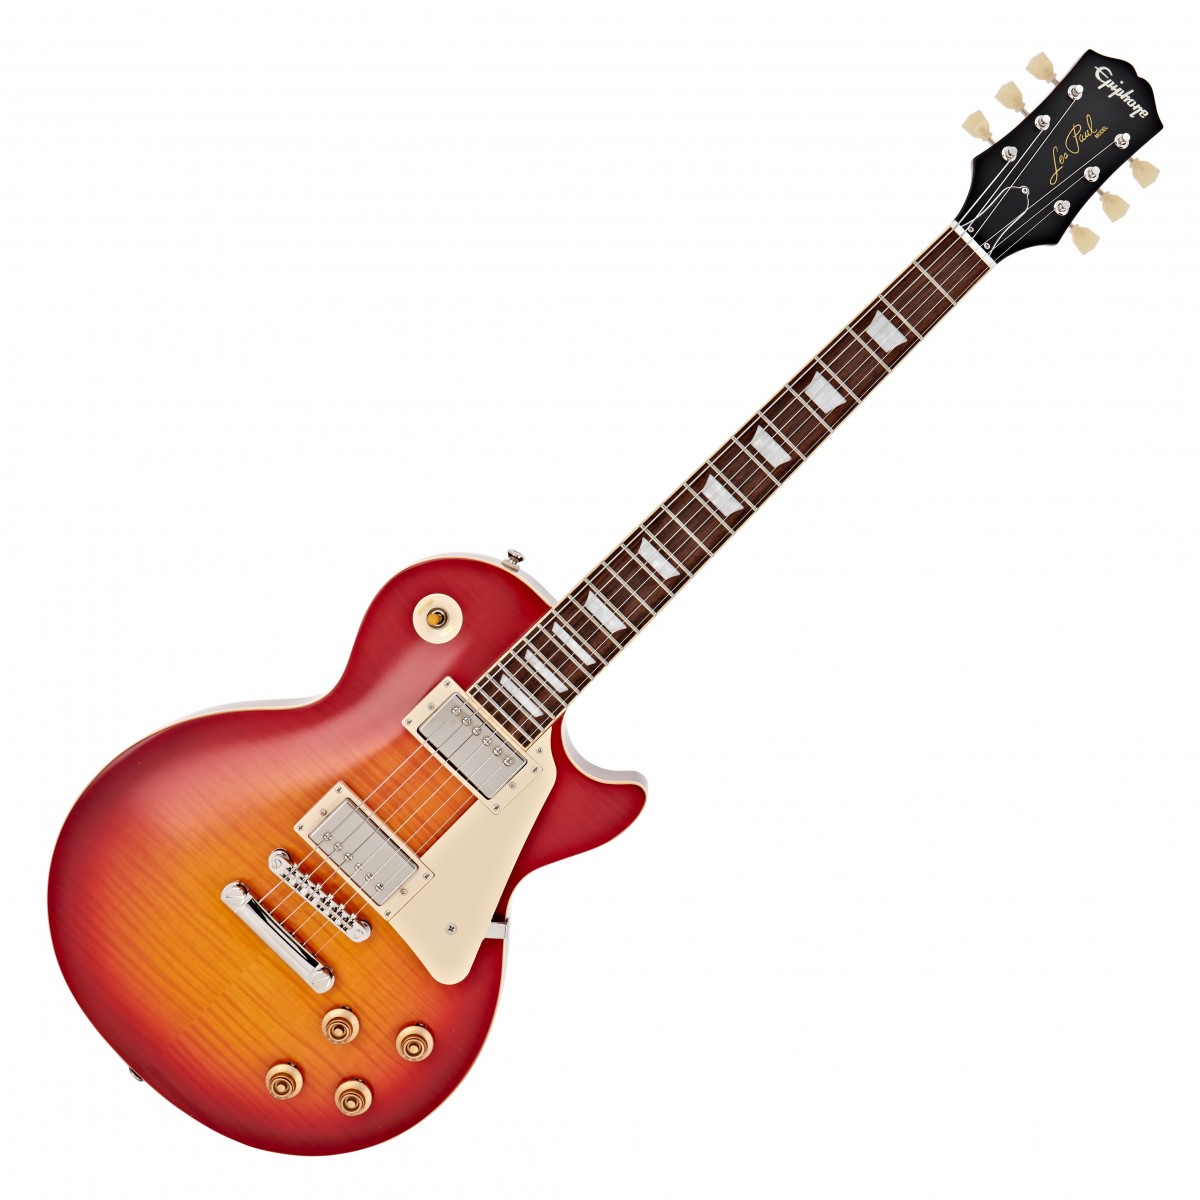 Billede af Epiphone 1959 Les Paul Standard Outfit El-guitar (Aged Dark Cherry Burst)